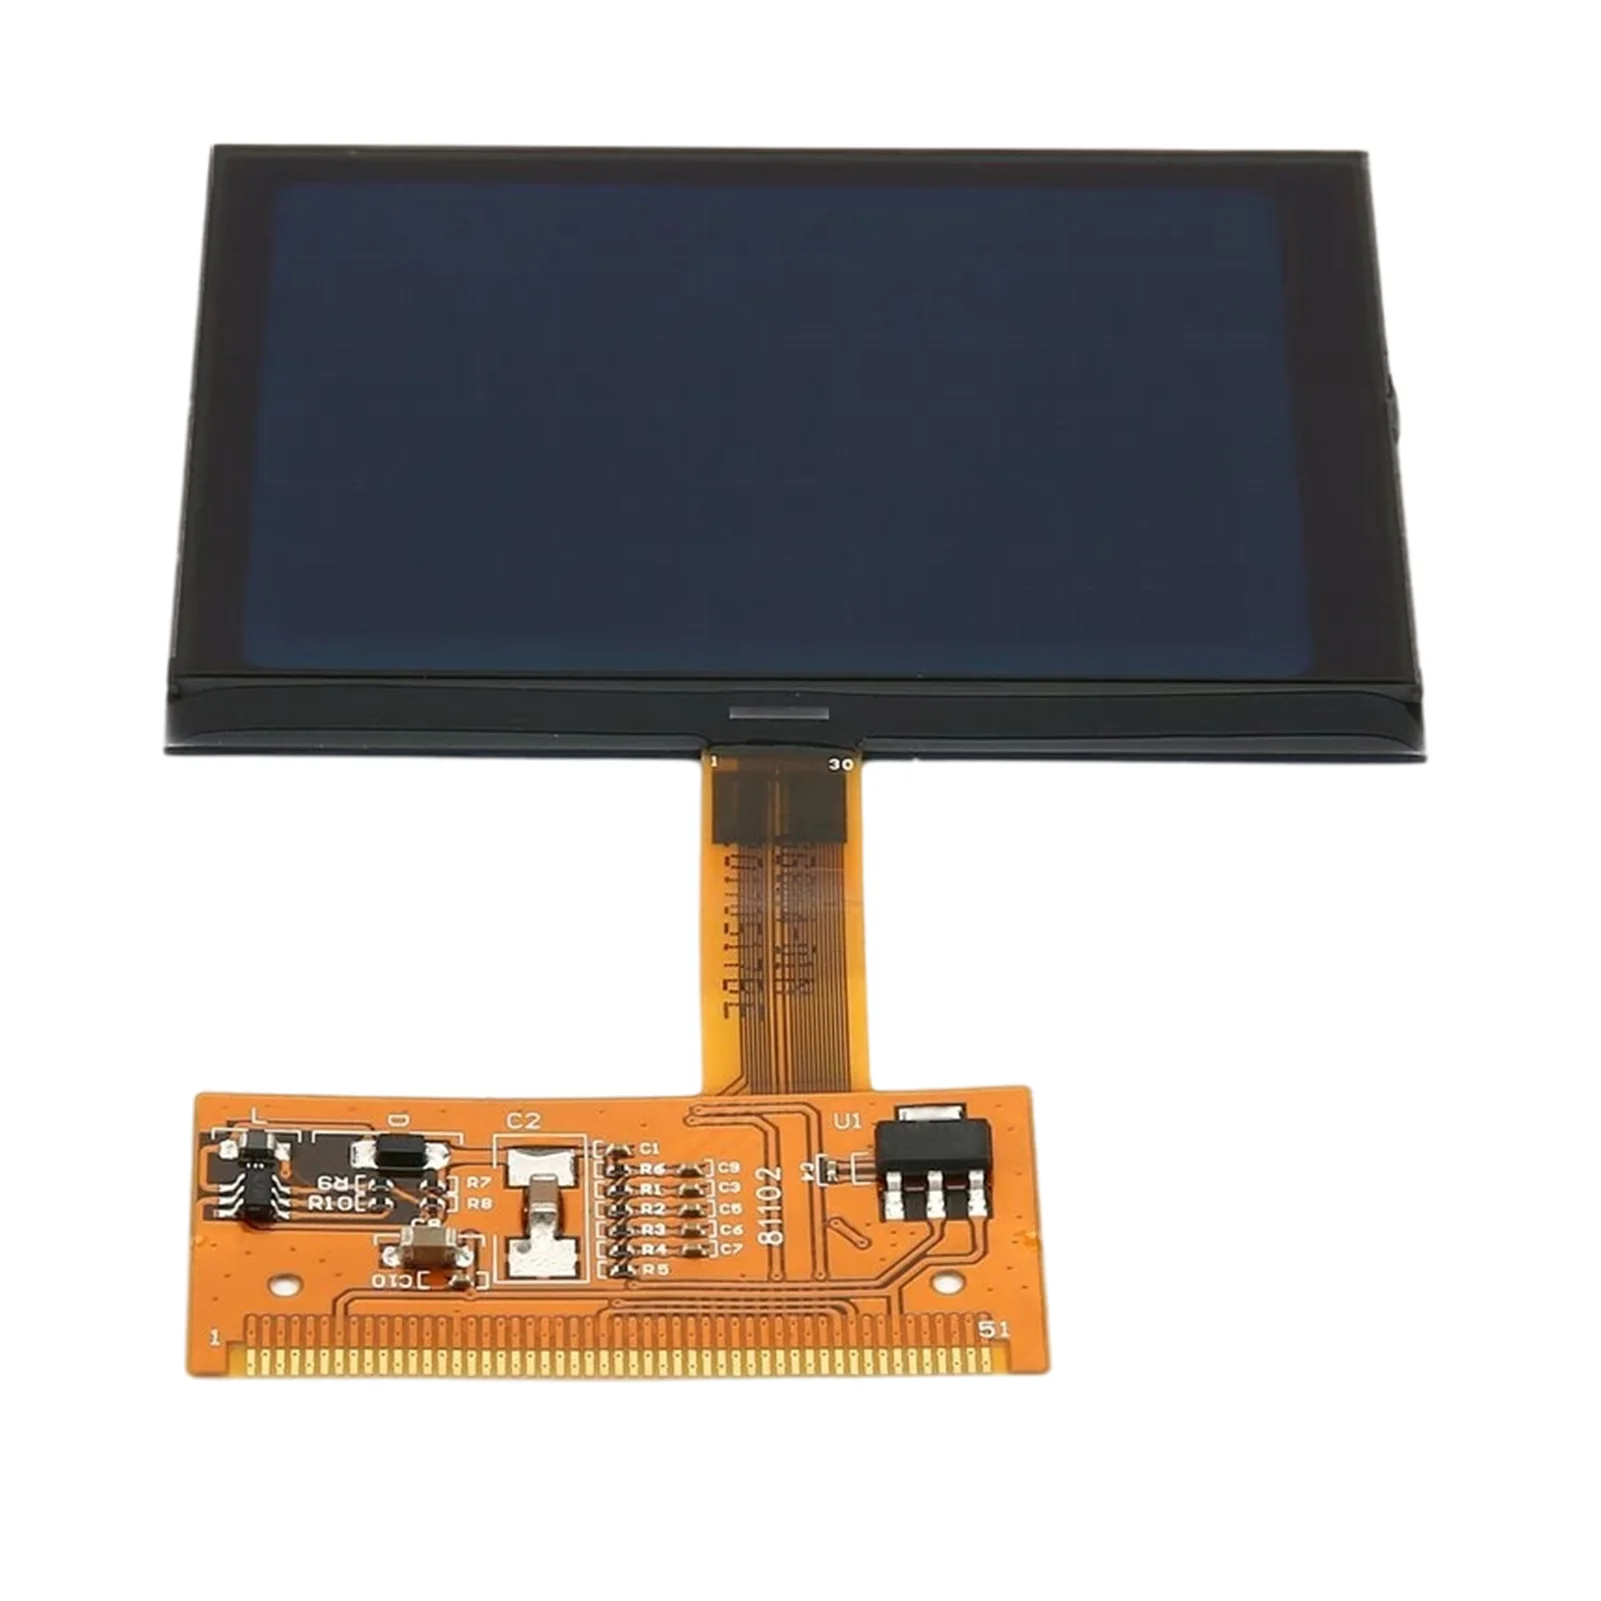 

ЖК-дисплей Автомобильный цветной экран монитор VDO ЖК кластер экран для A3 A4 A6 долговечный супер качество